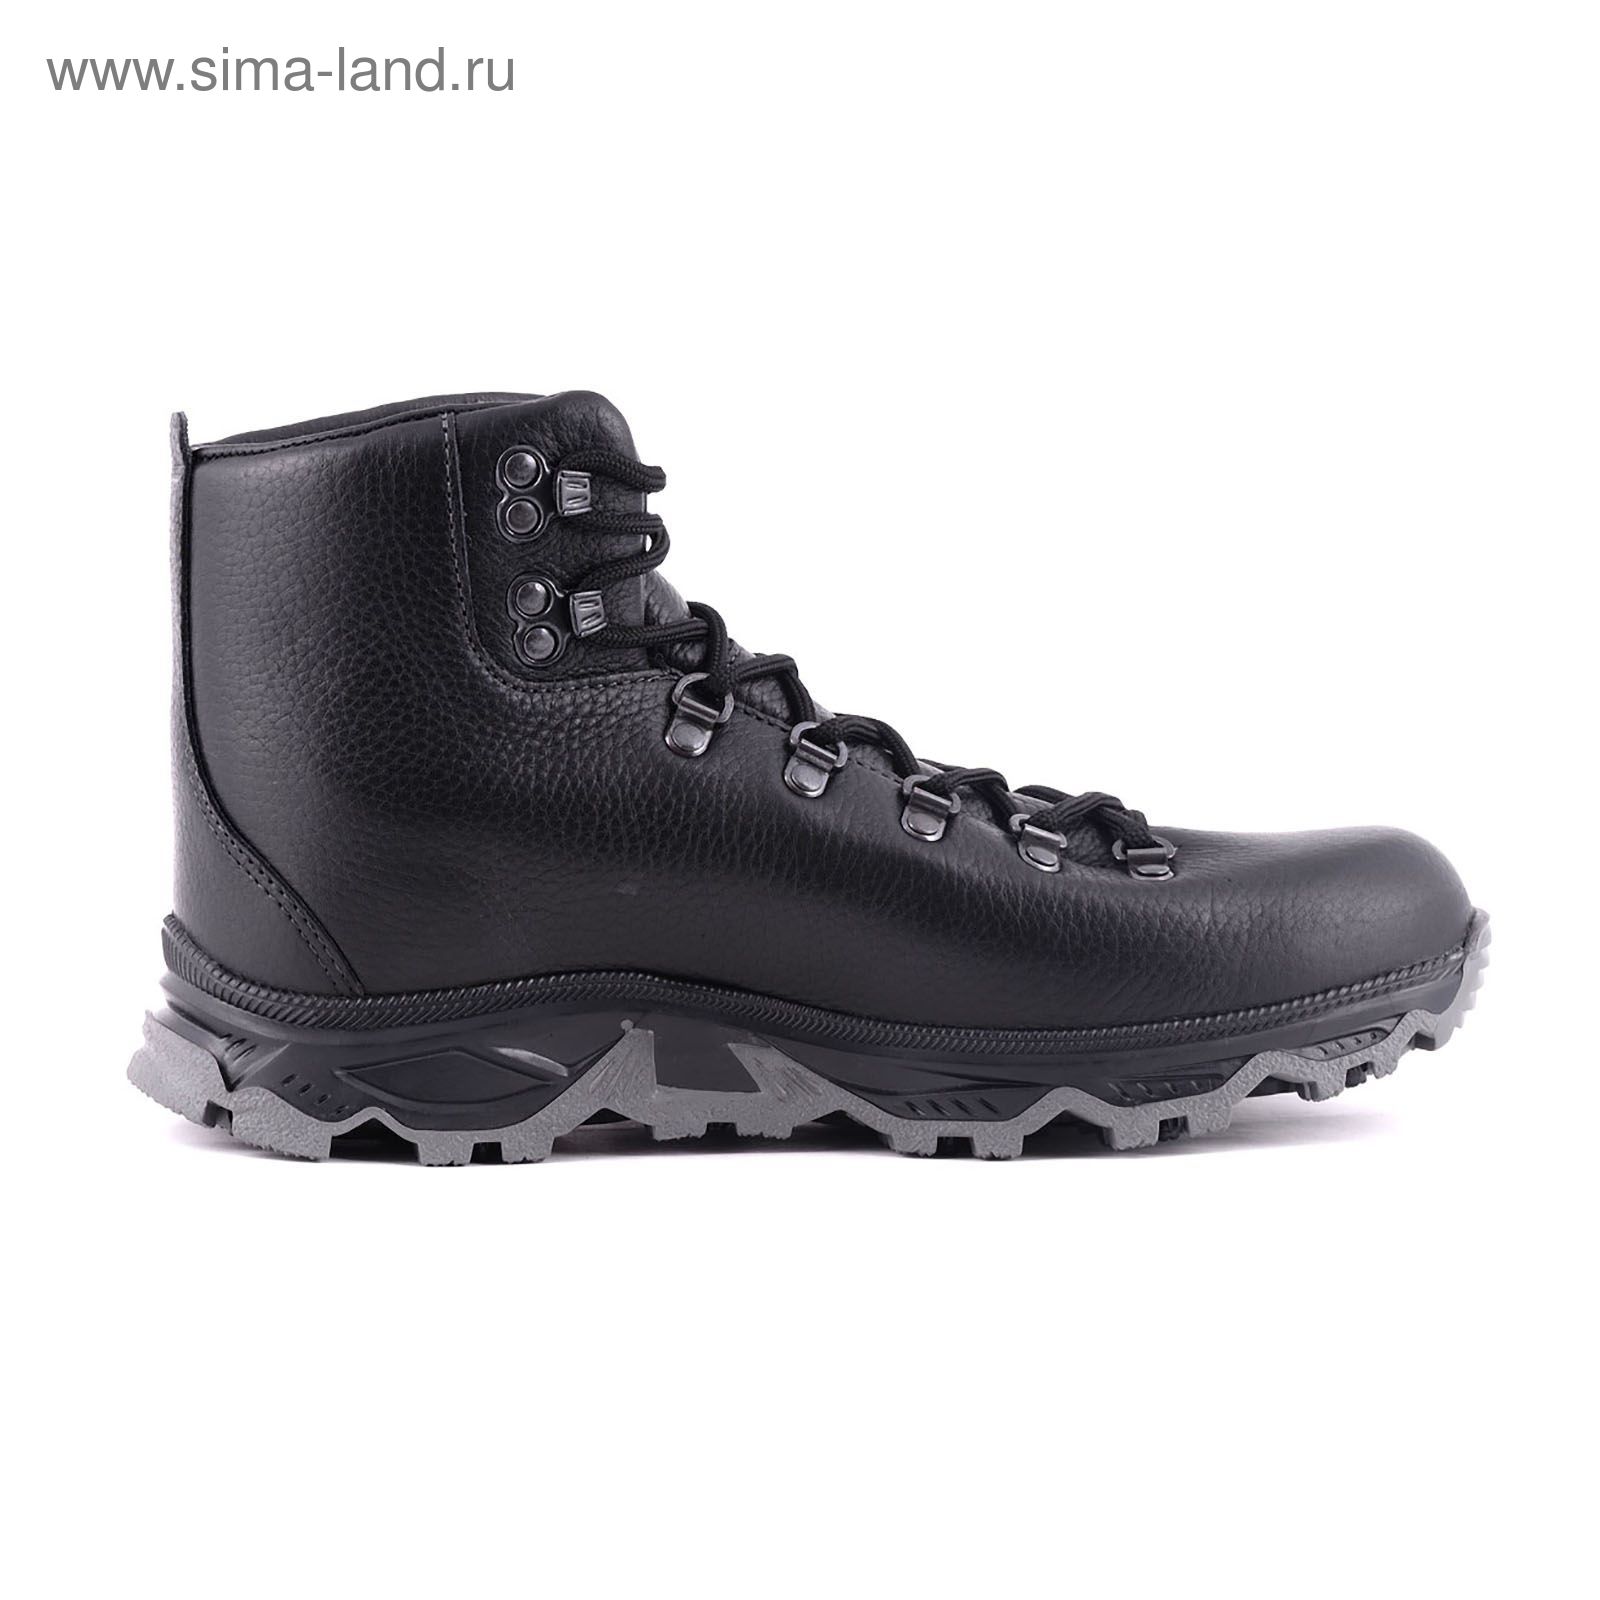 Ботинки TREK Викинг 81-01 мех (черный) (р.40)